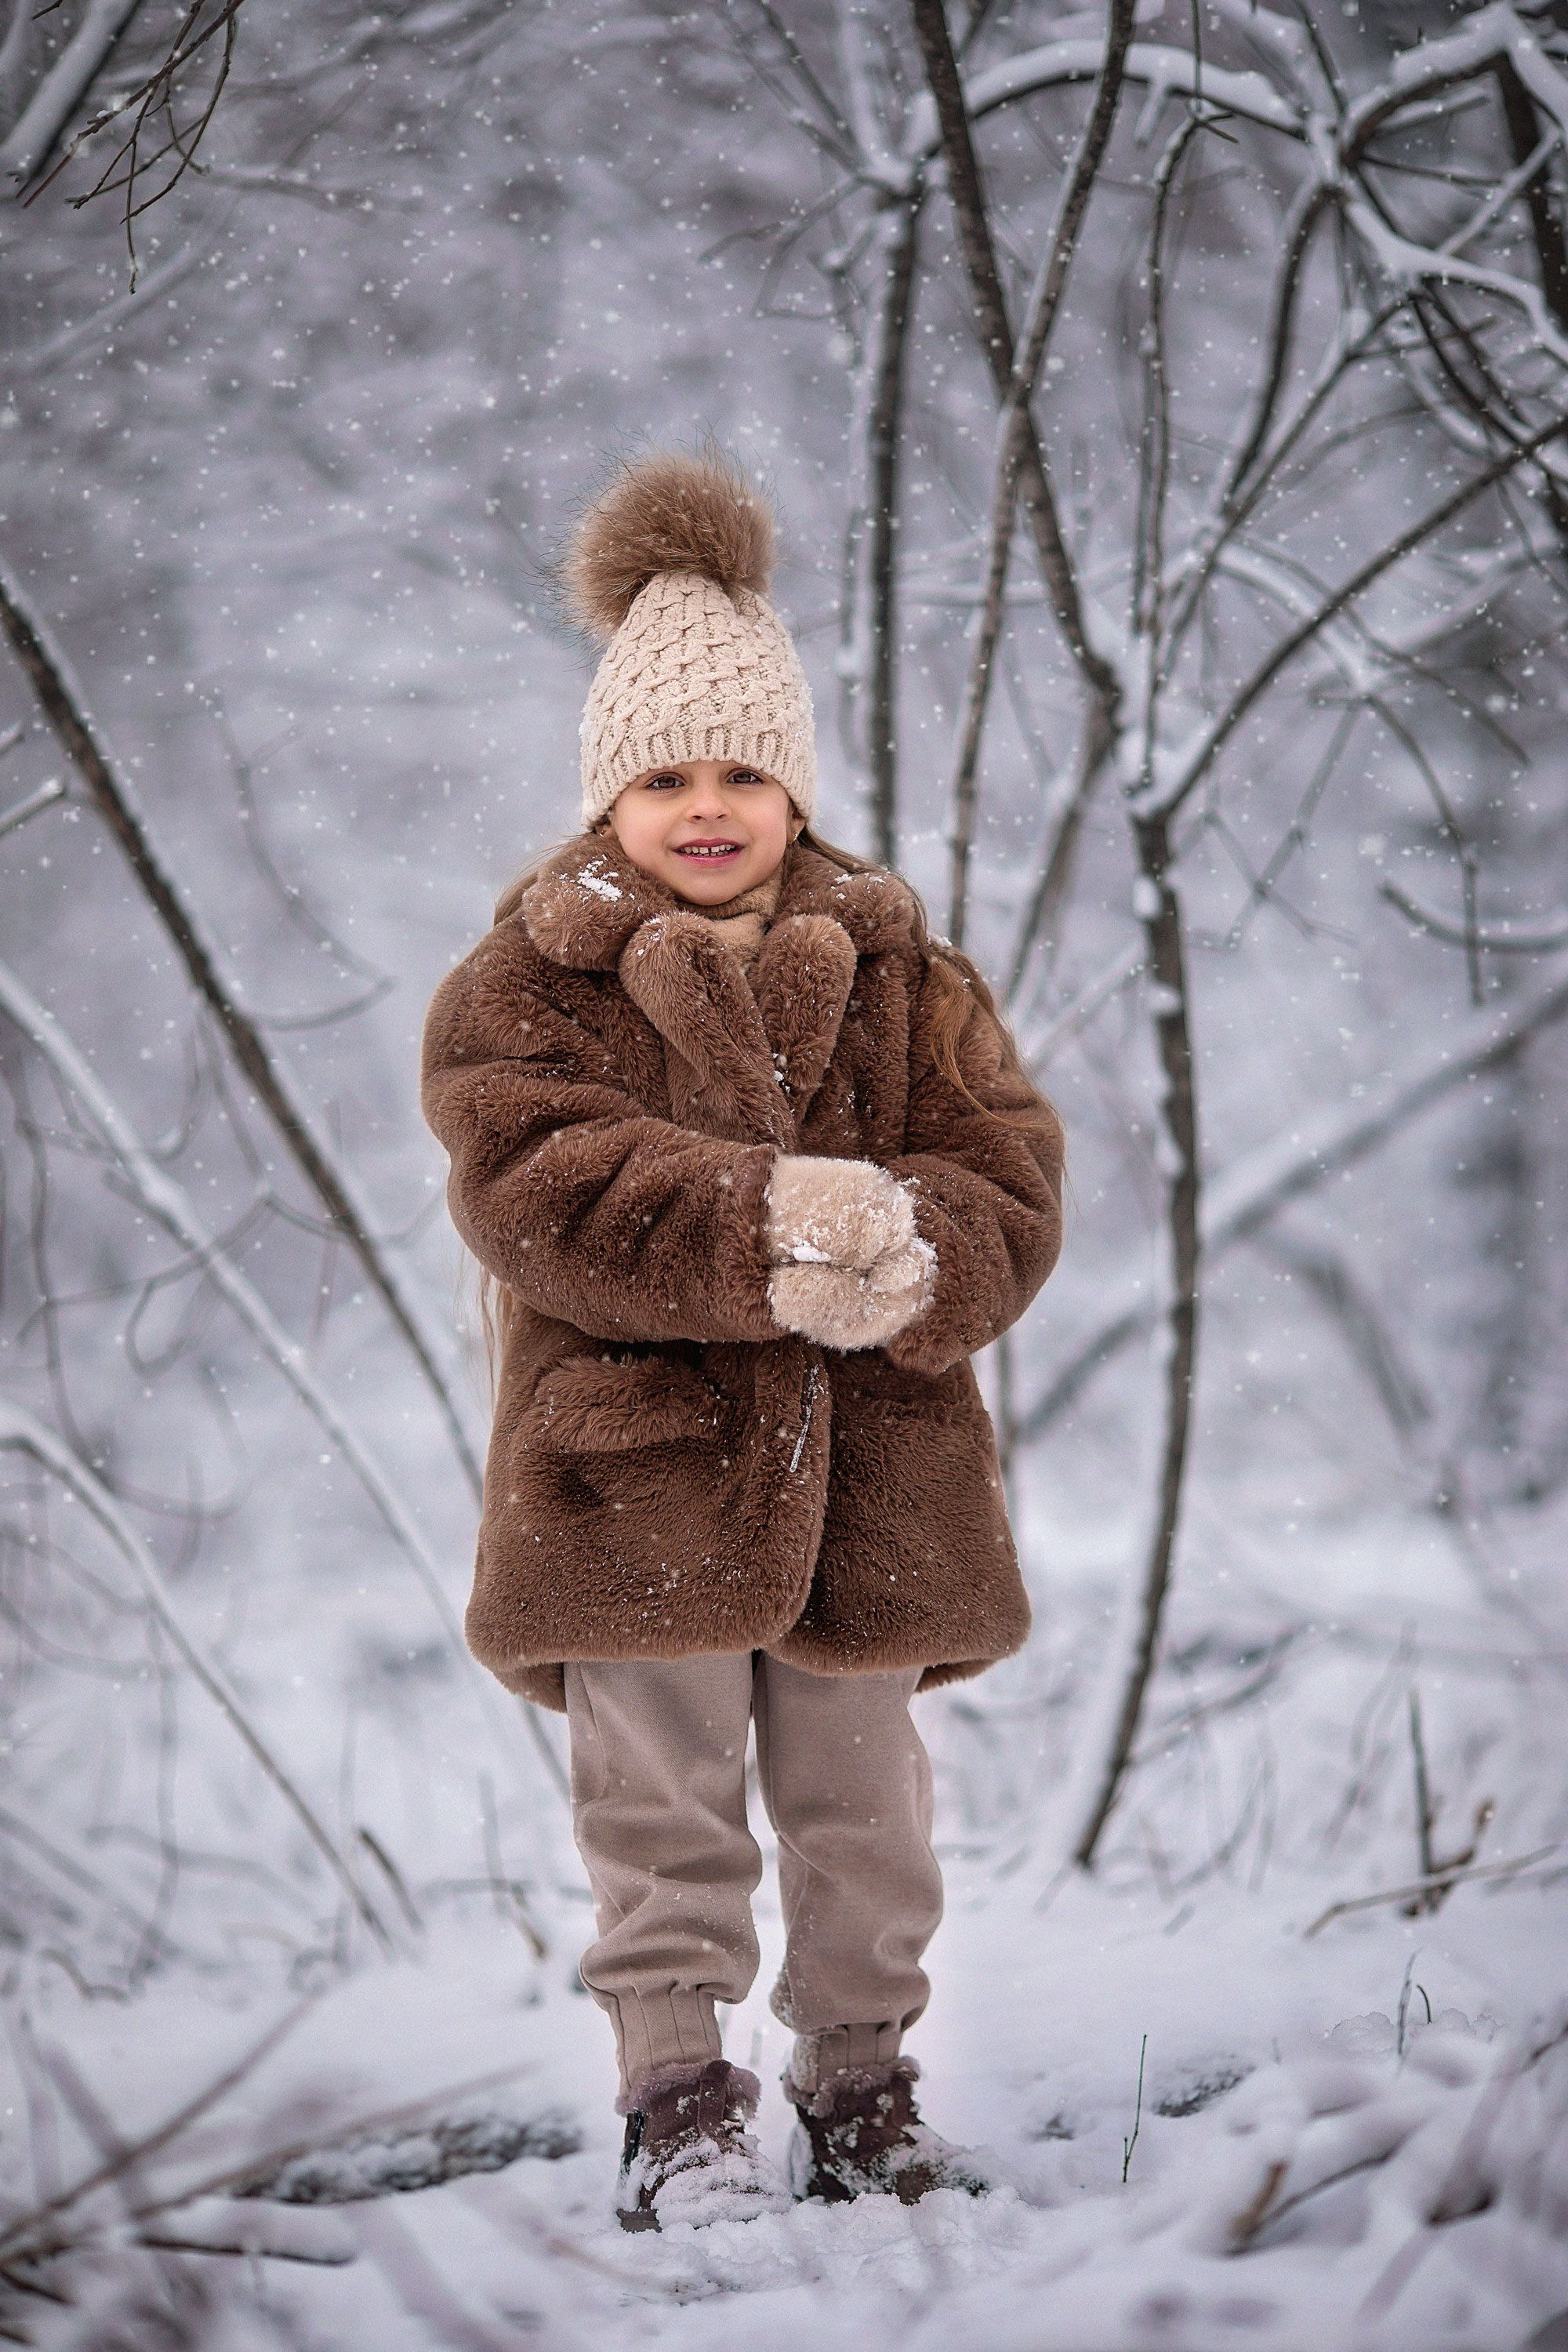 детская фотография, детский портрет, зима, зимнее фото, снег, детская фотосессия, Александра Пименова